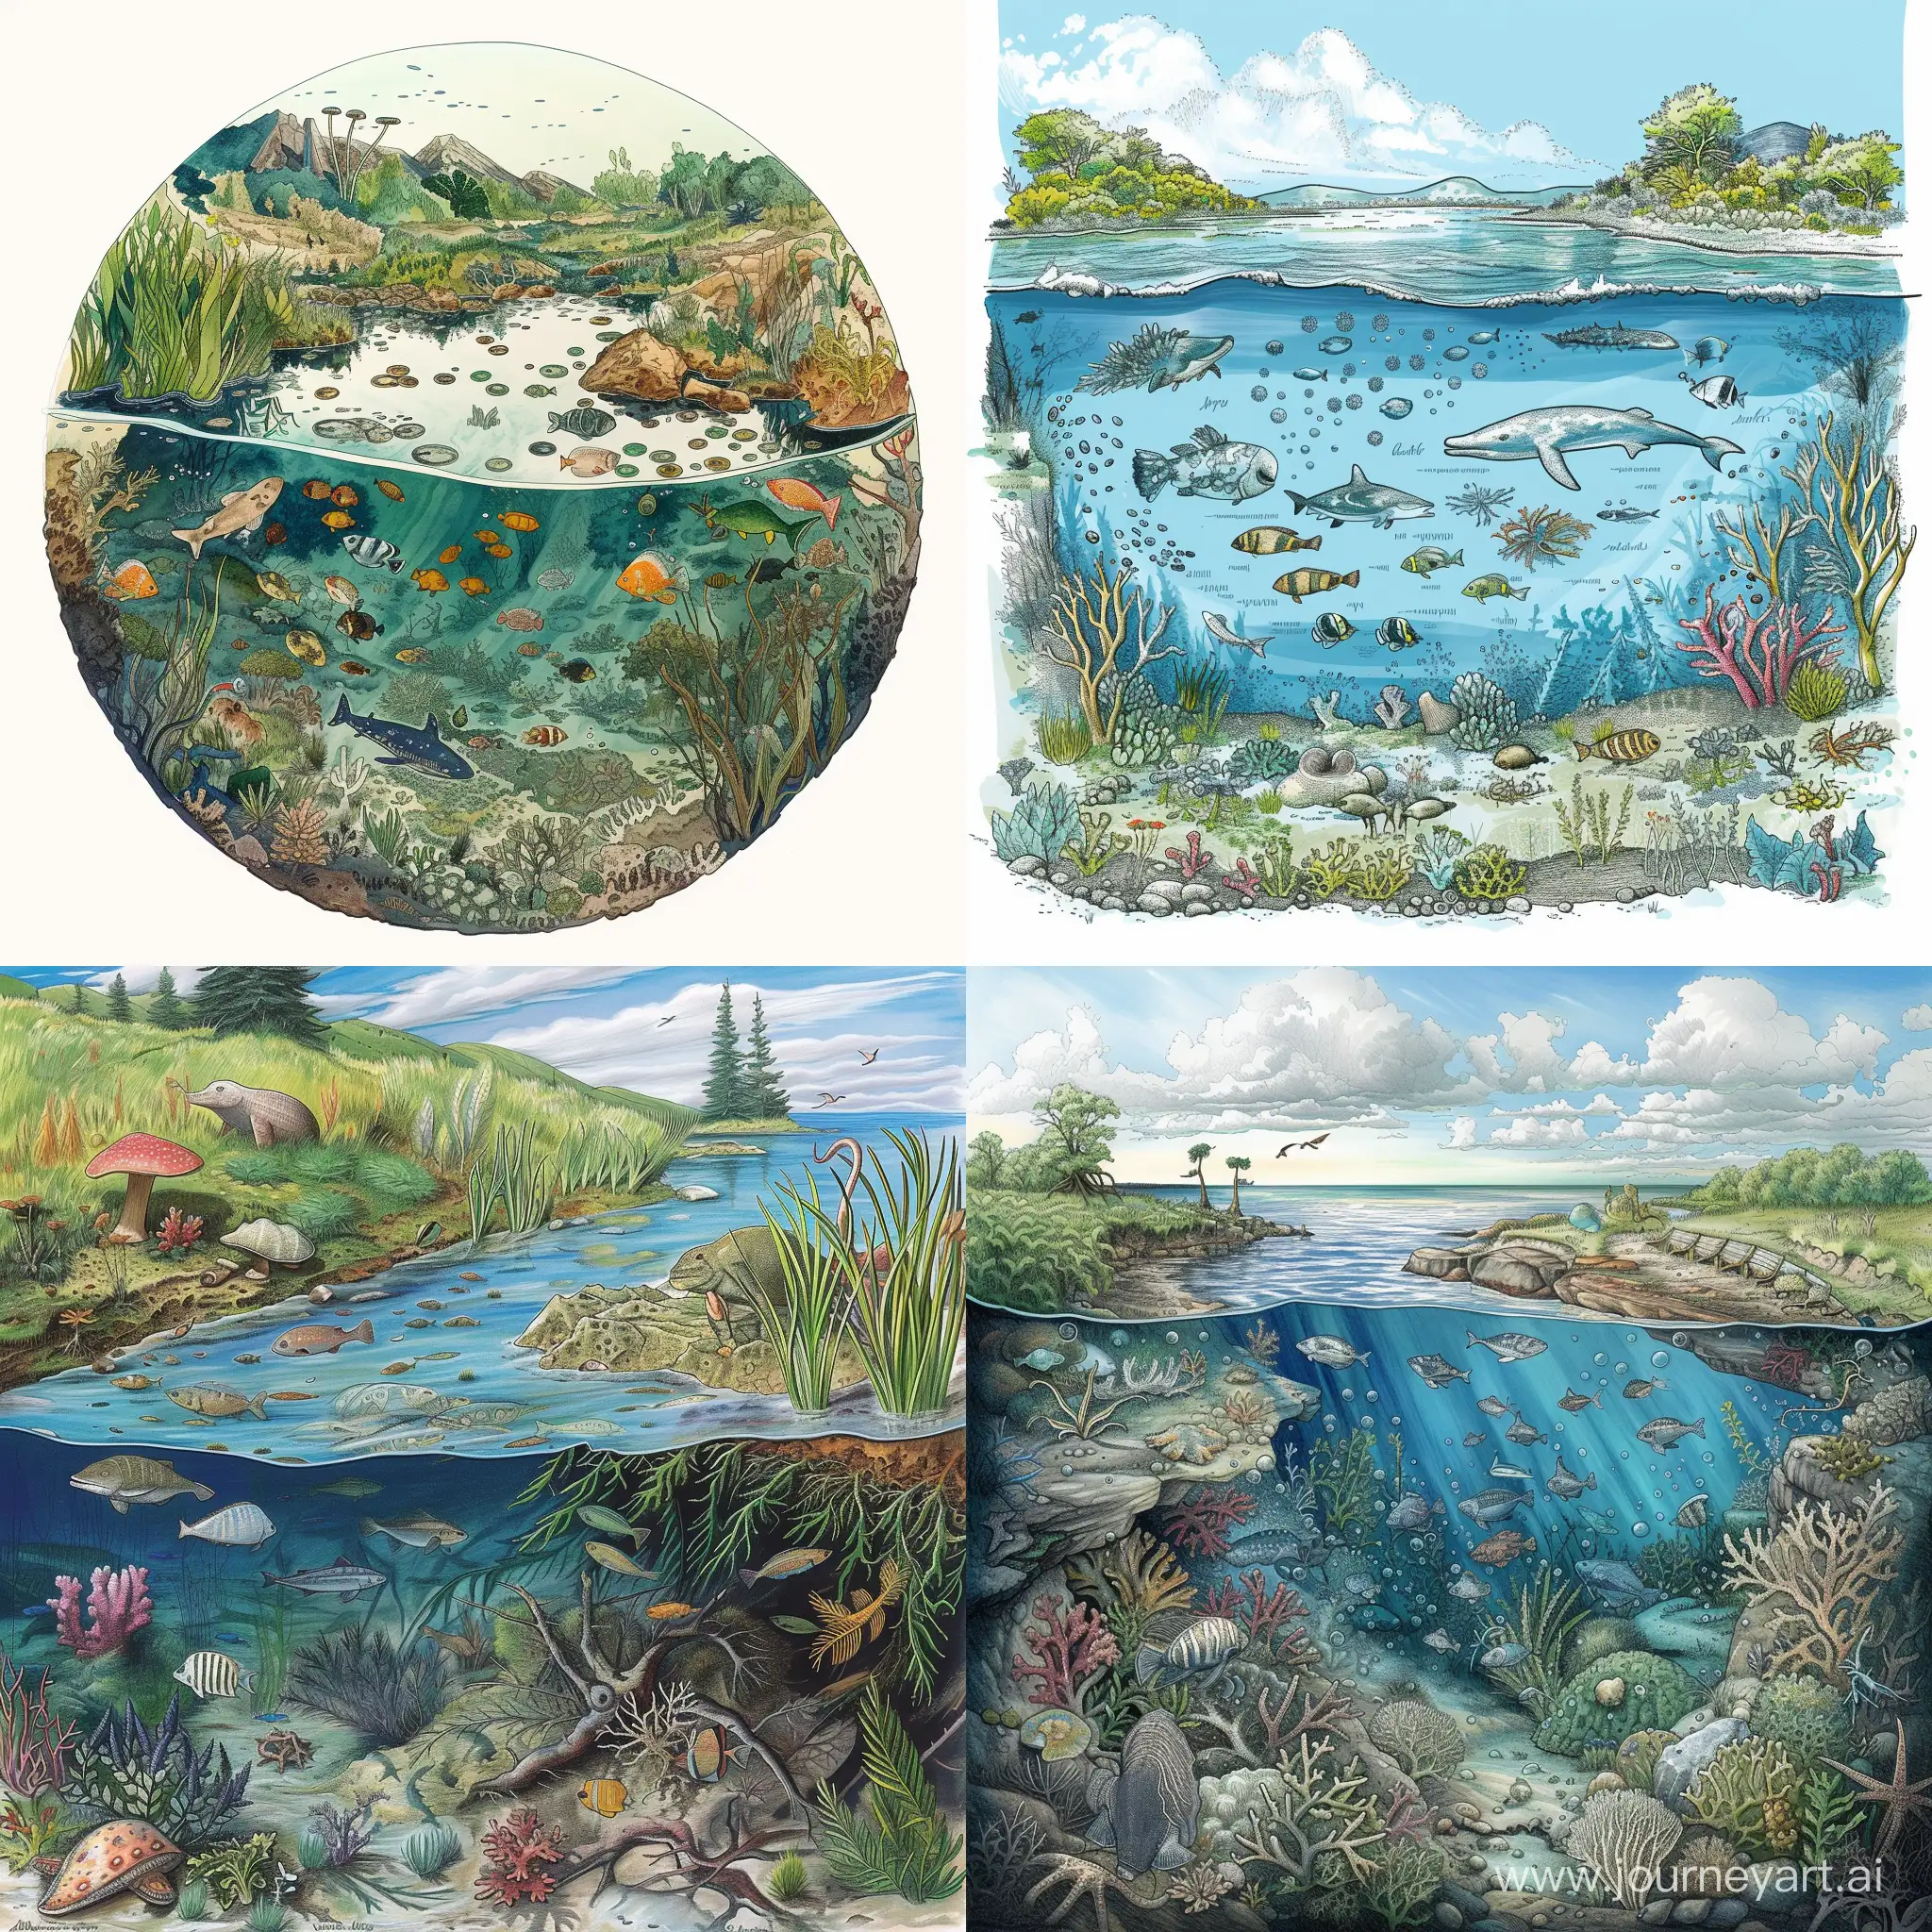 «Мир воды» - рисунки, изображающие водные экосистемы и их обитателей, и затрагивающие проблемы охраны водных ресурсов планеты.